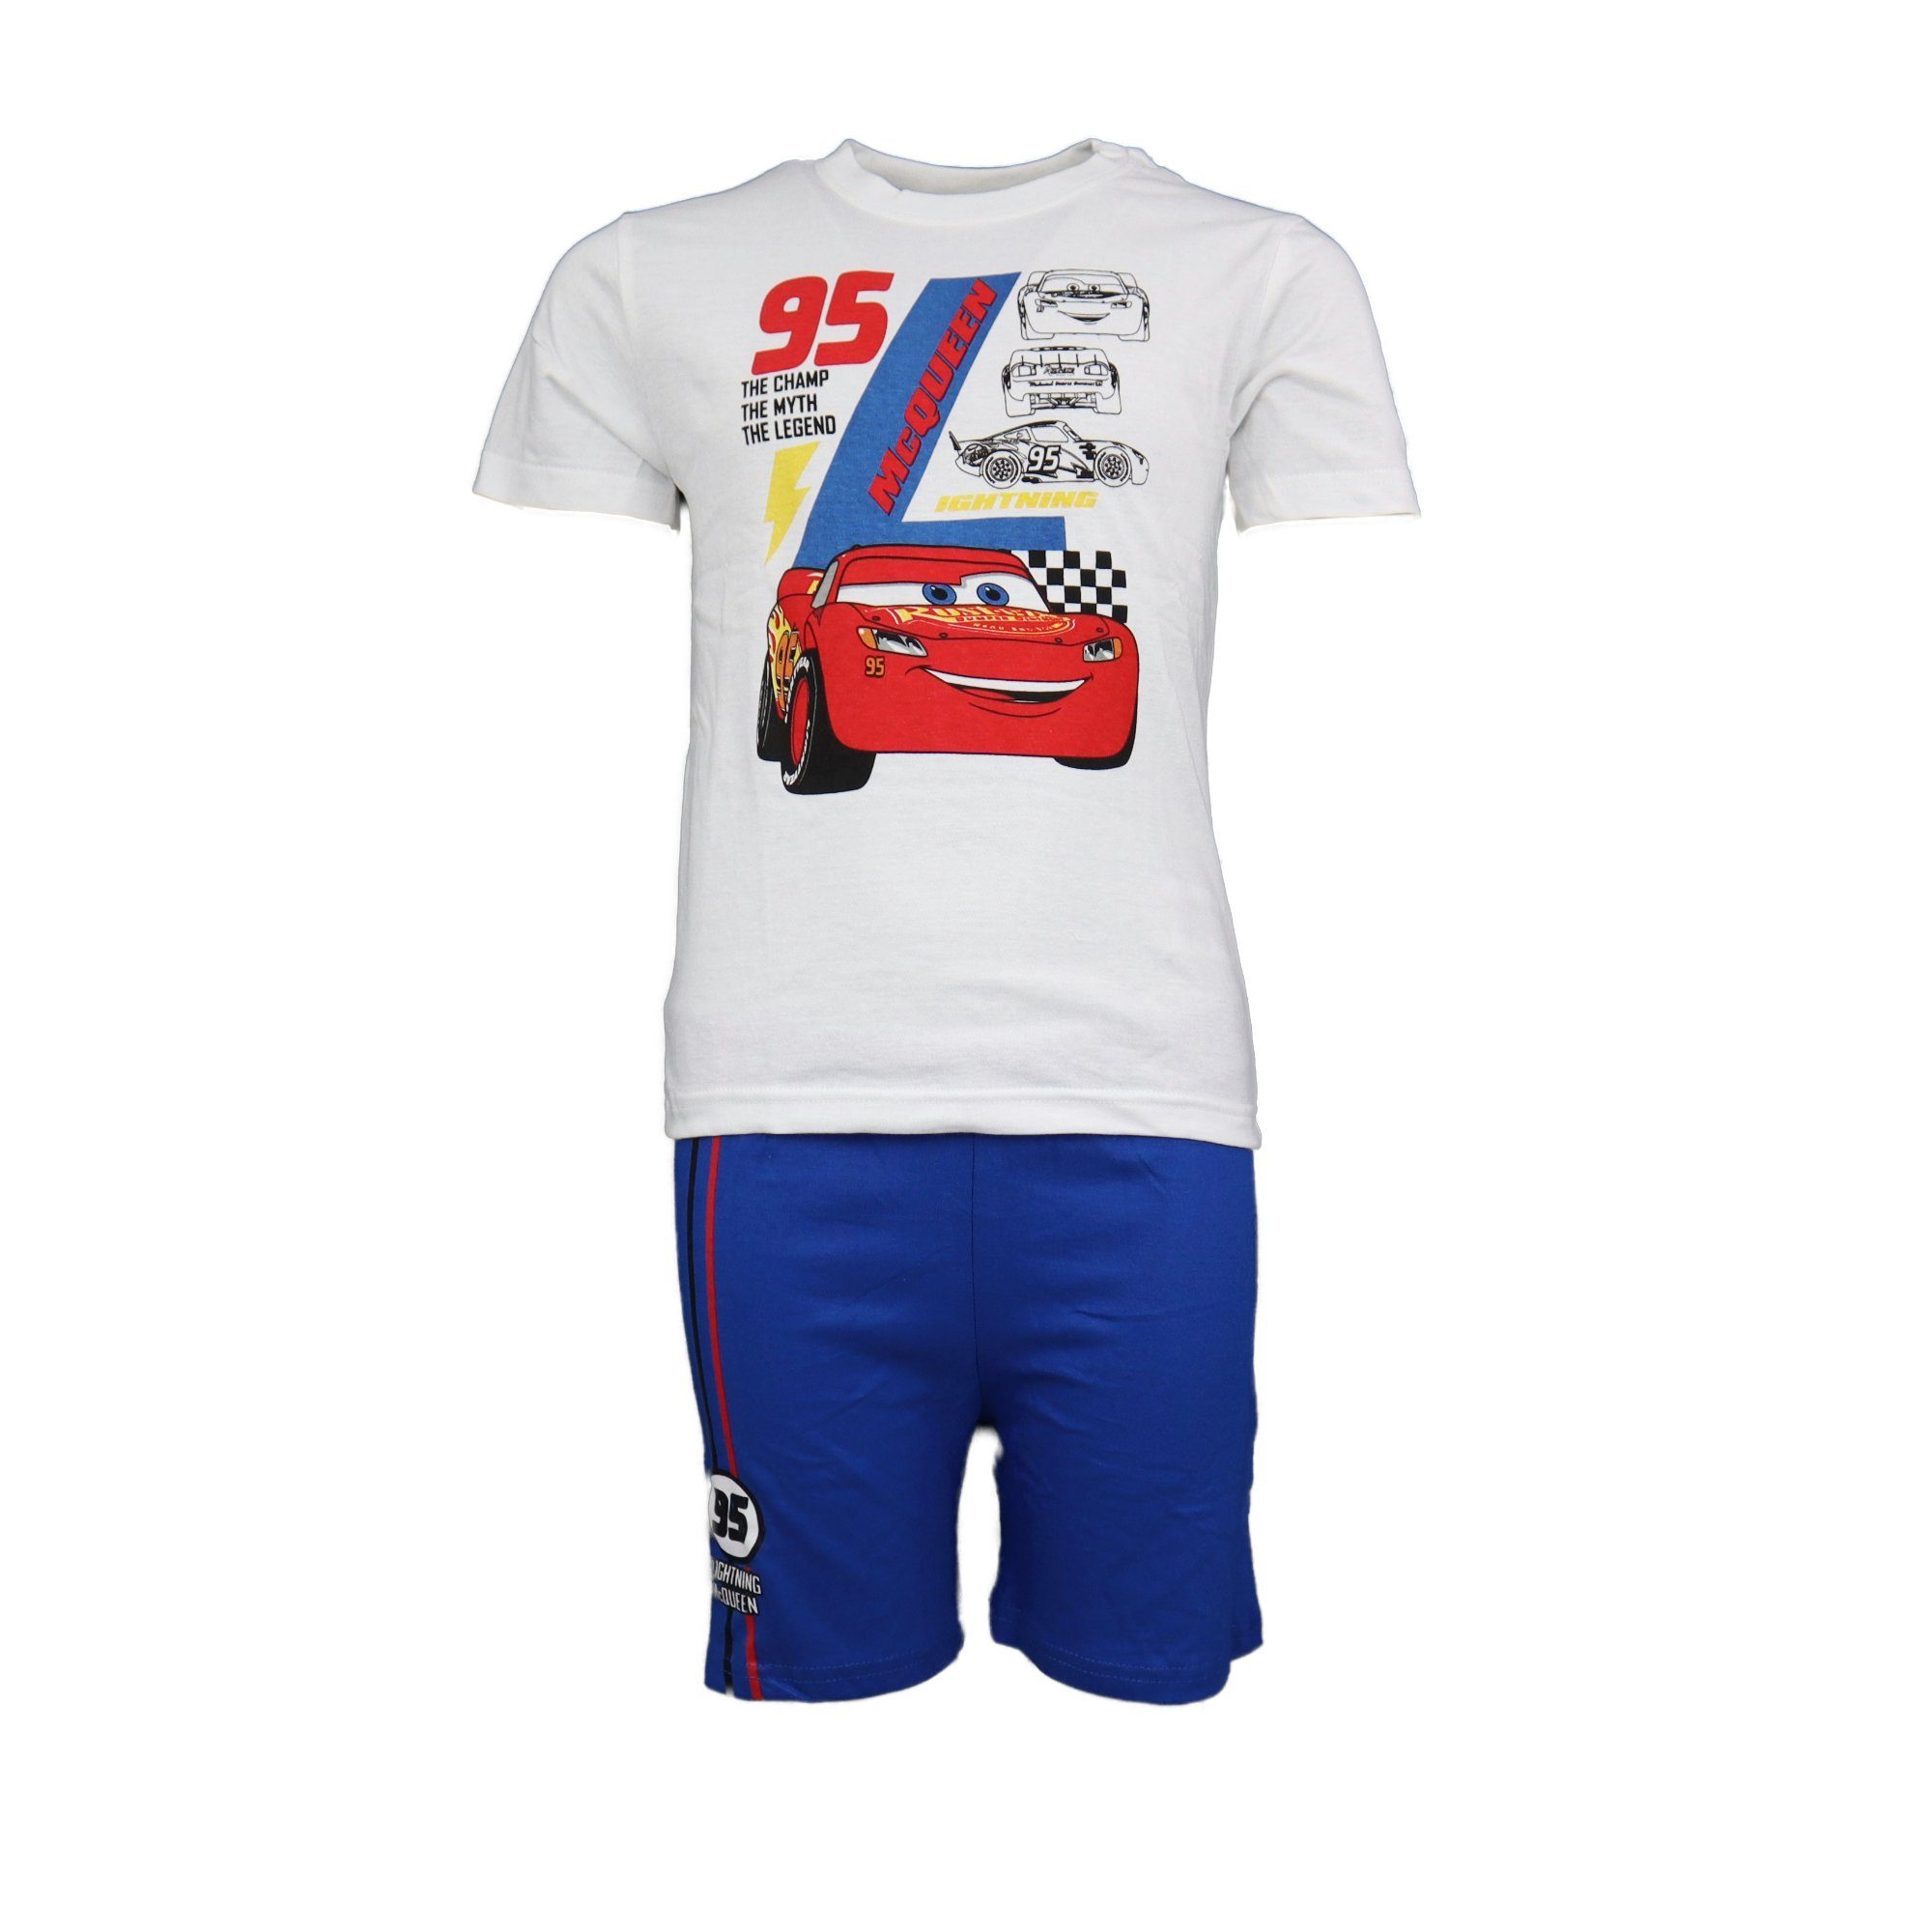 Kinder Pyjama Disney Baumwolle Schlafanzug McQueen Jungen Gr. Lightning Cars bis 128, 98 Weiß